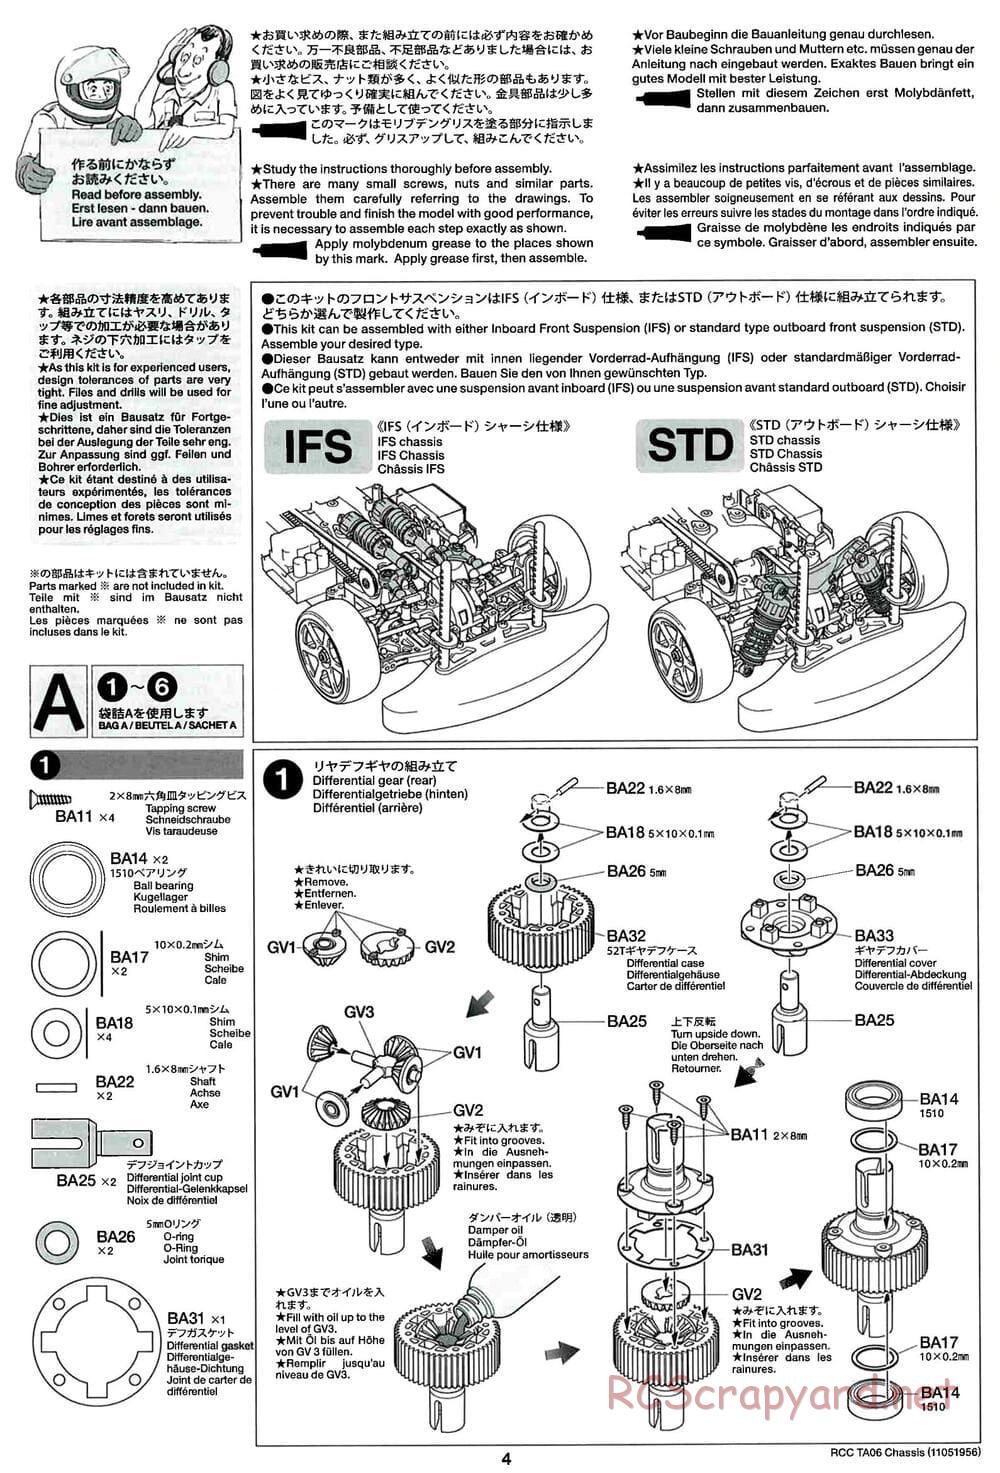 Tamiya - TA06 Chassis - Manual - Page 4